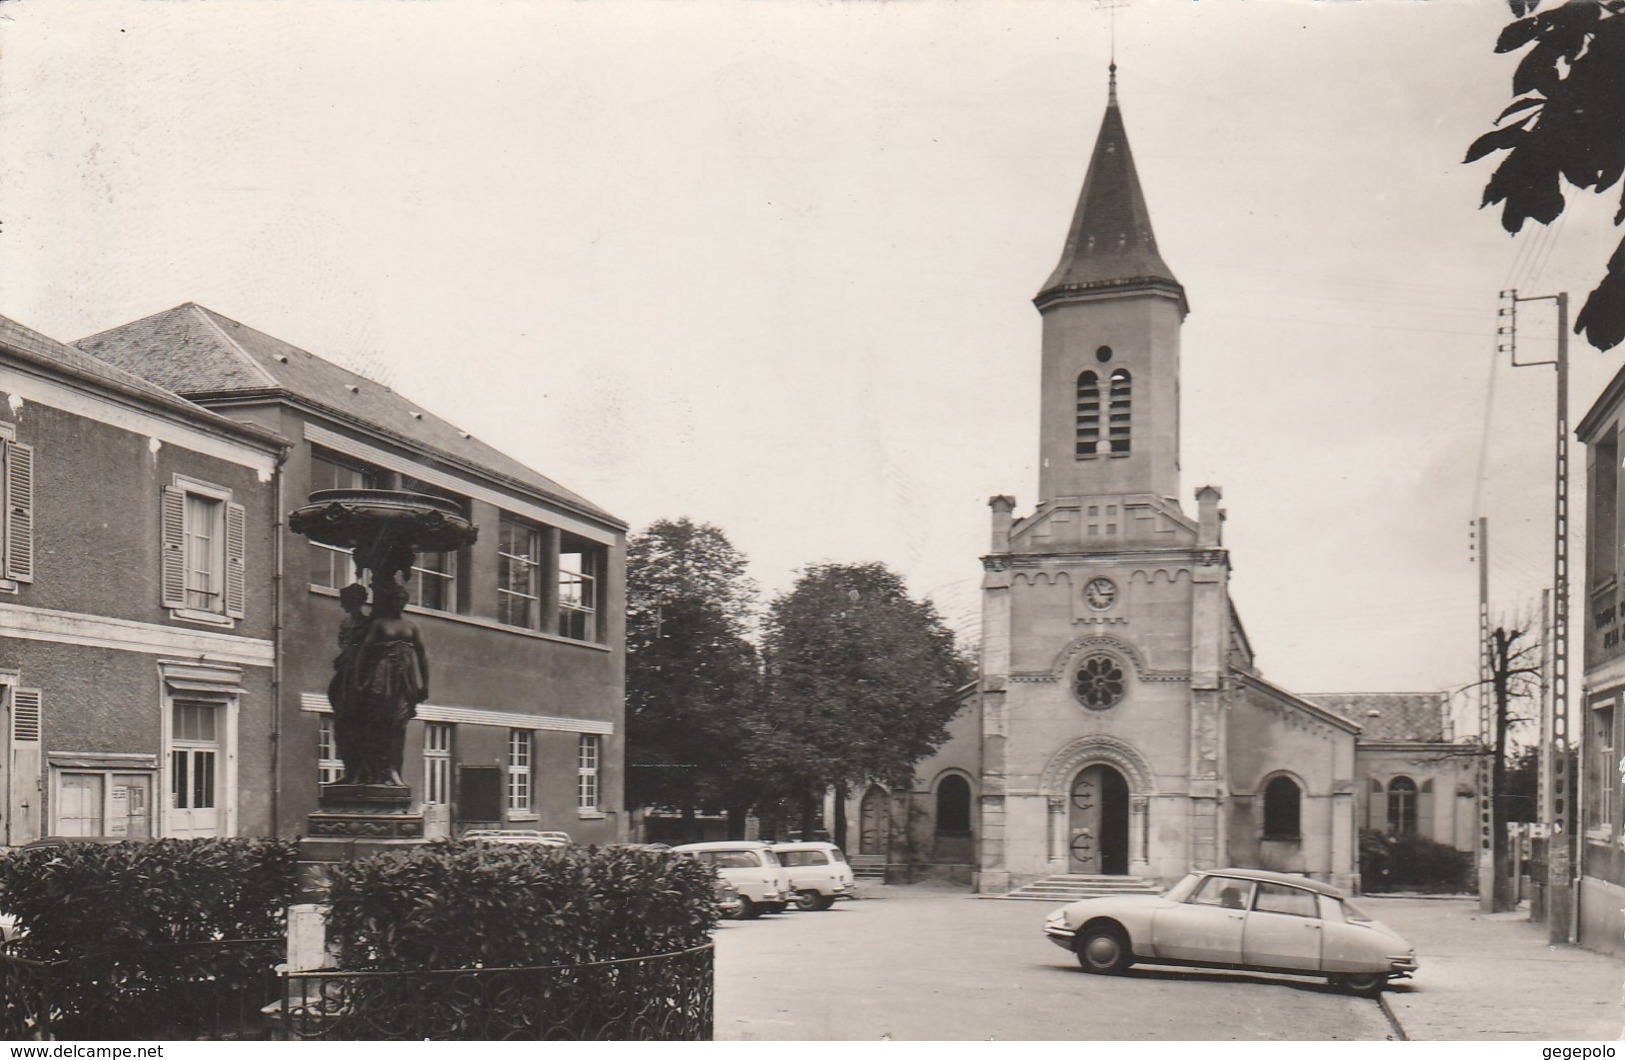 MONTGERON  - L'église - Montgeron